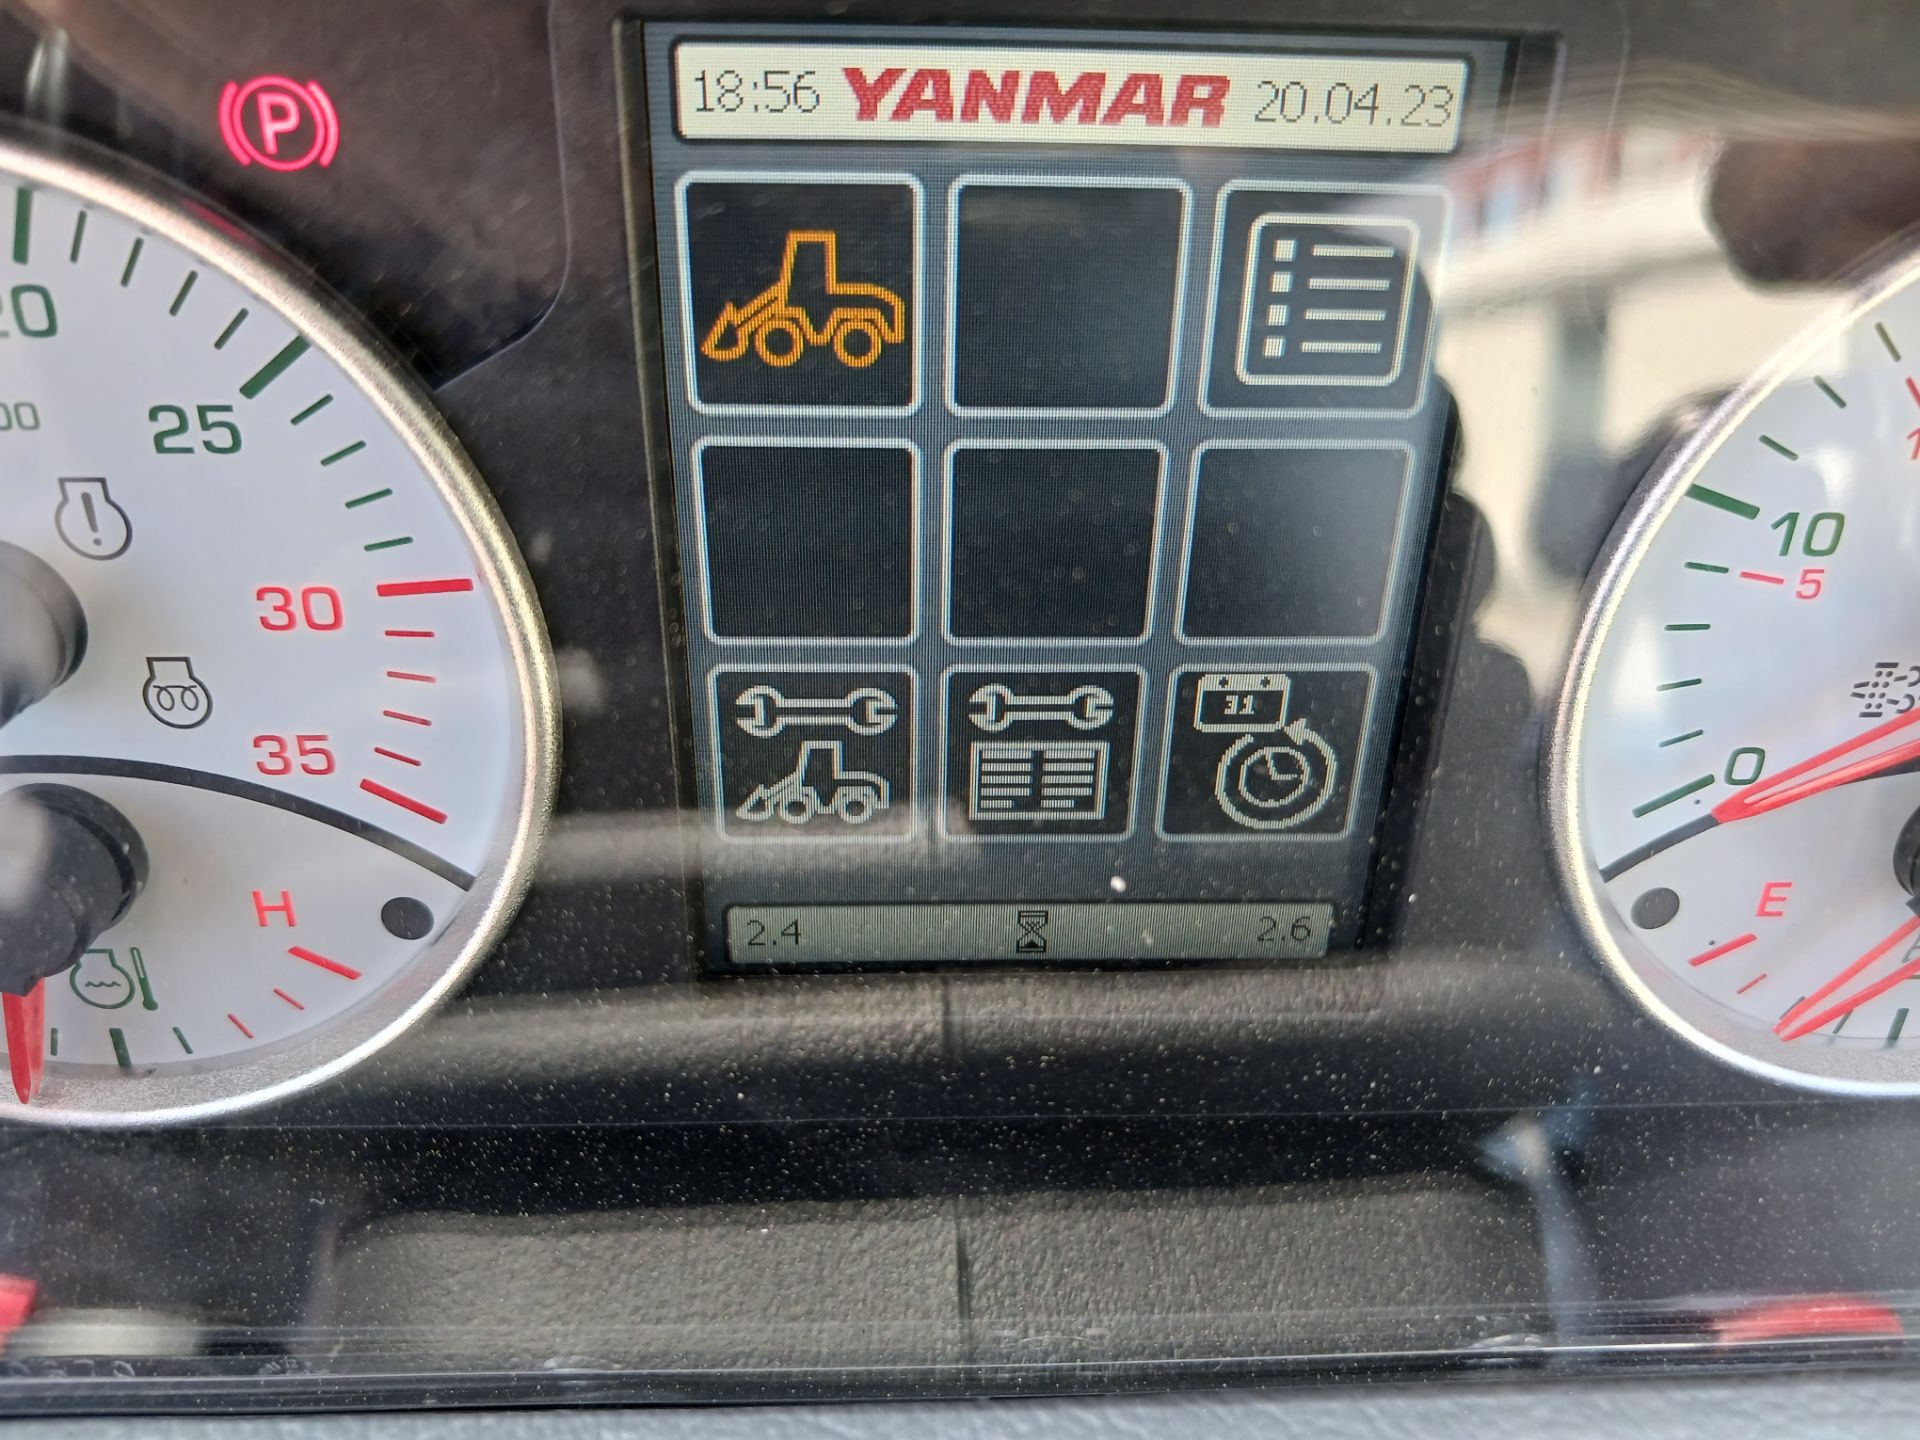 New 2022 Yanmar V8 Wheel Loader Forks & Bucket - Image 14 of 17